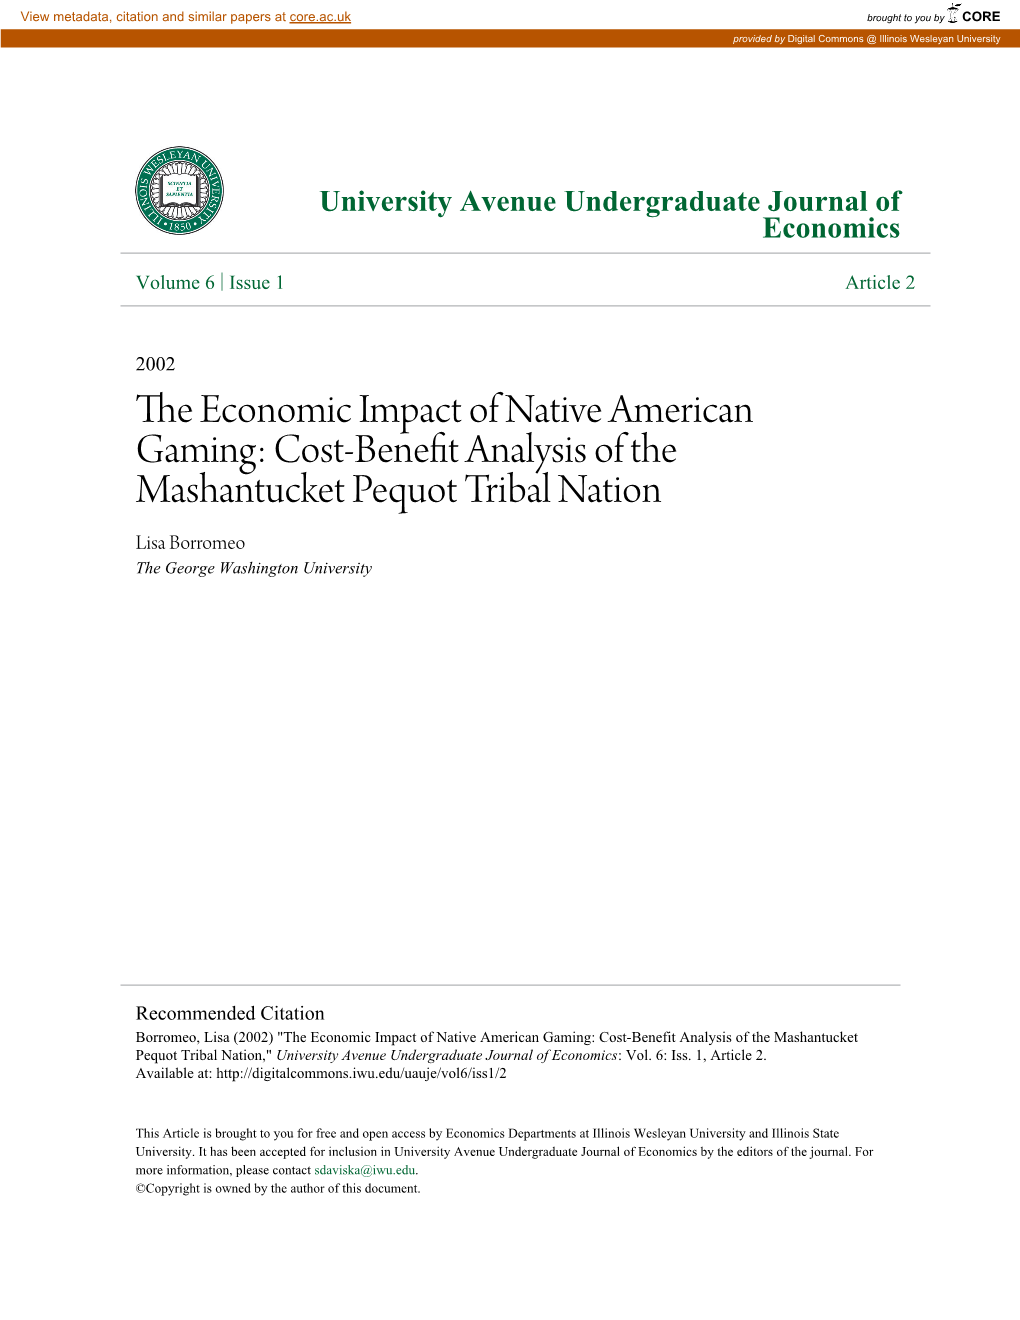 Cost-Benefit Analysis of the Mashantucket Pequot Tribal Nation Lisa Borromeo the George Washington University